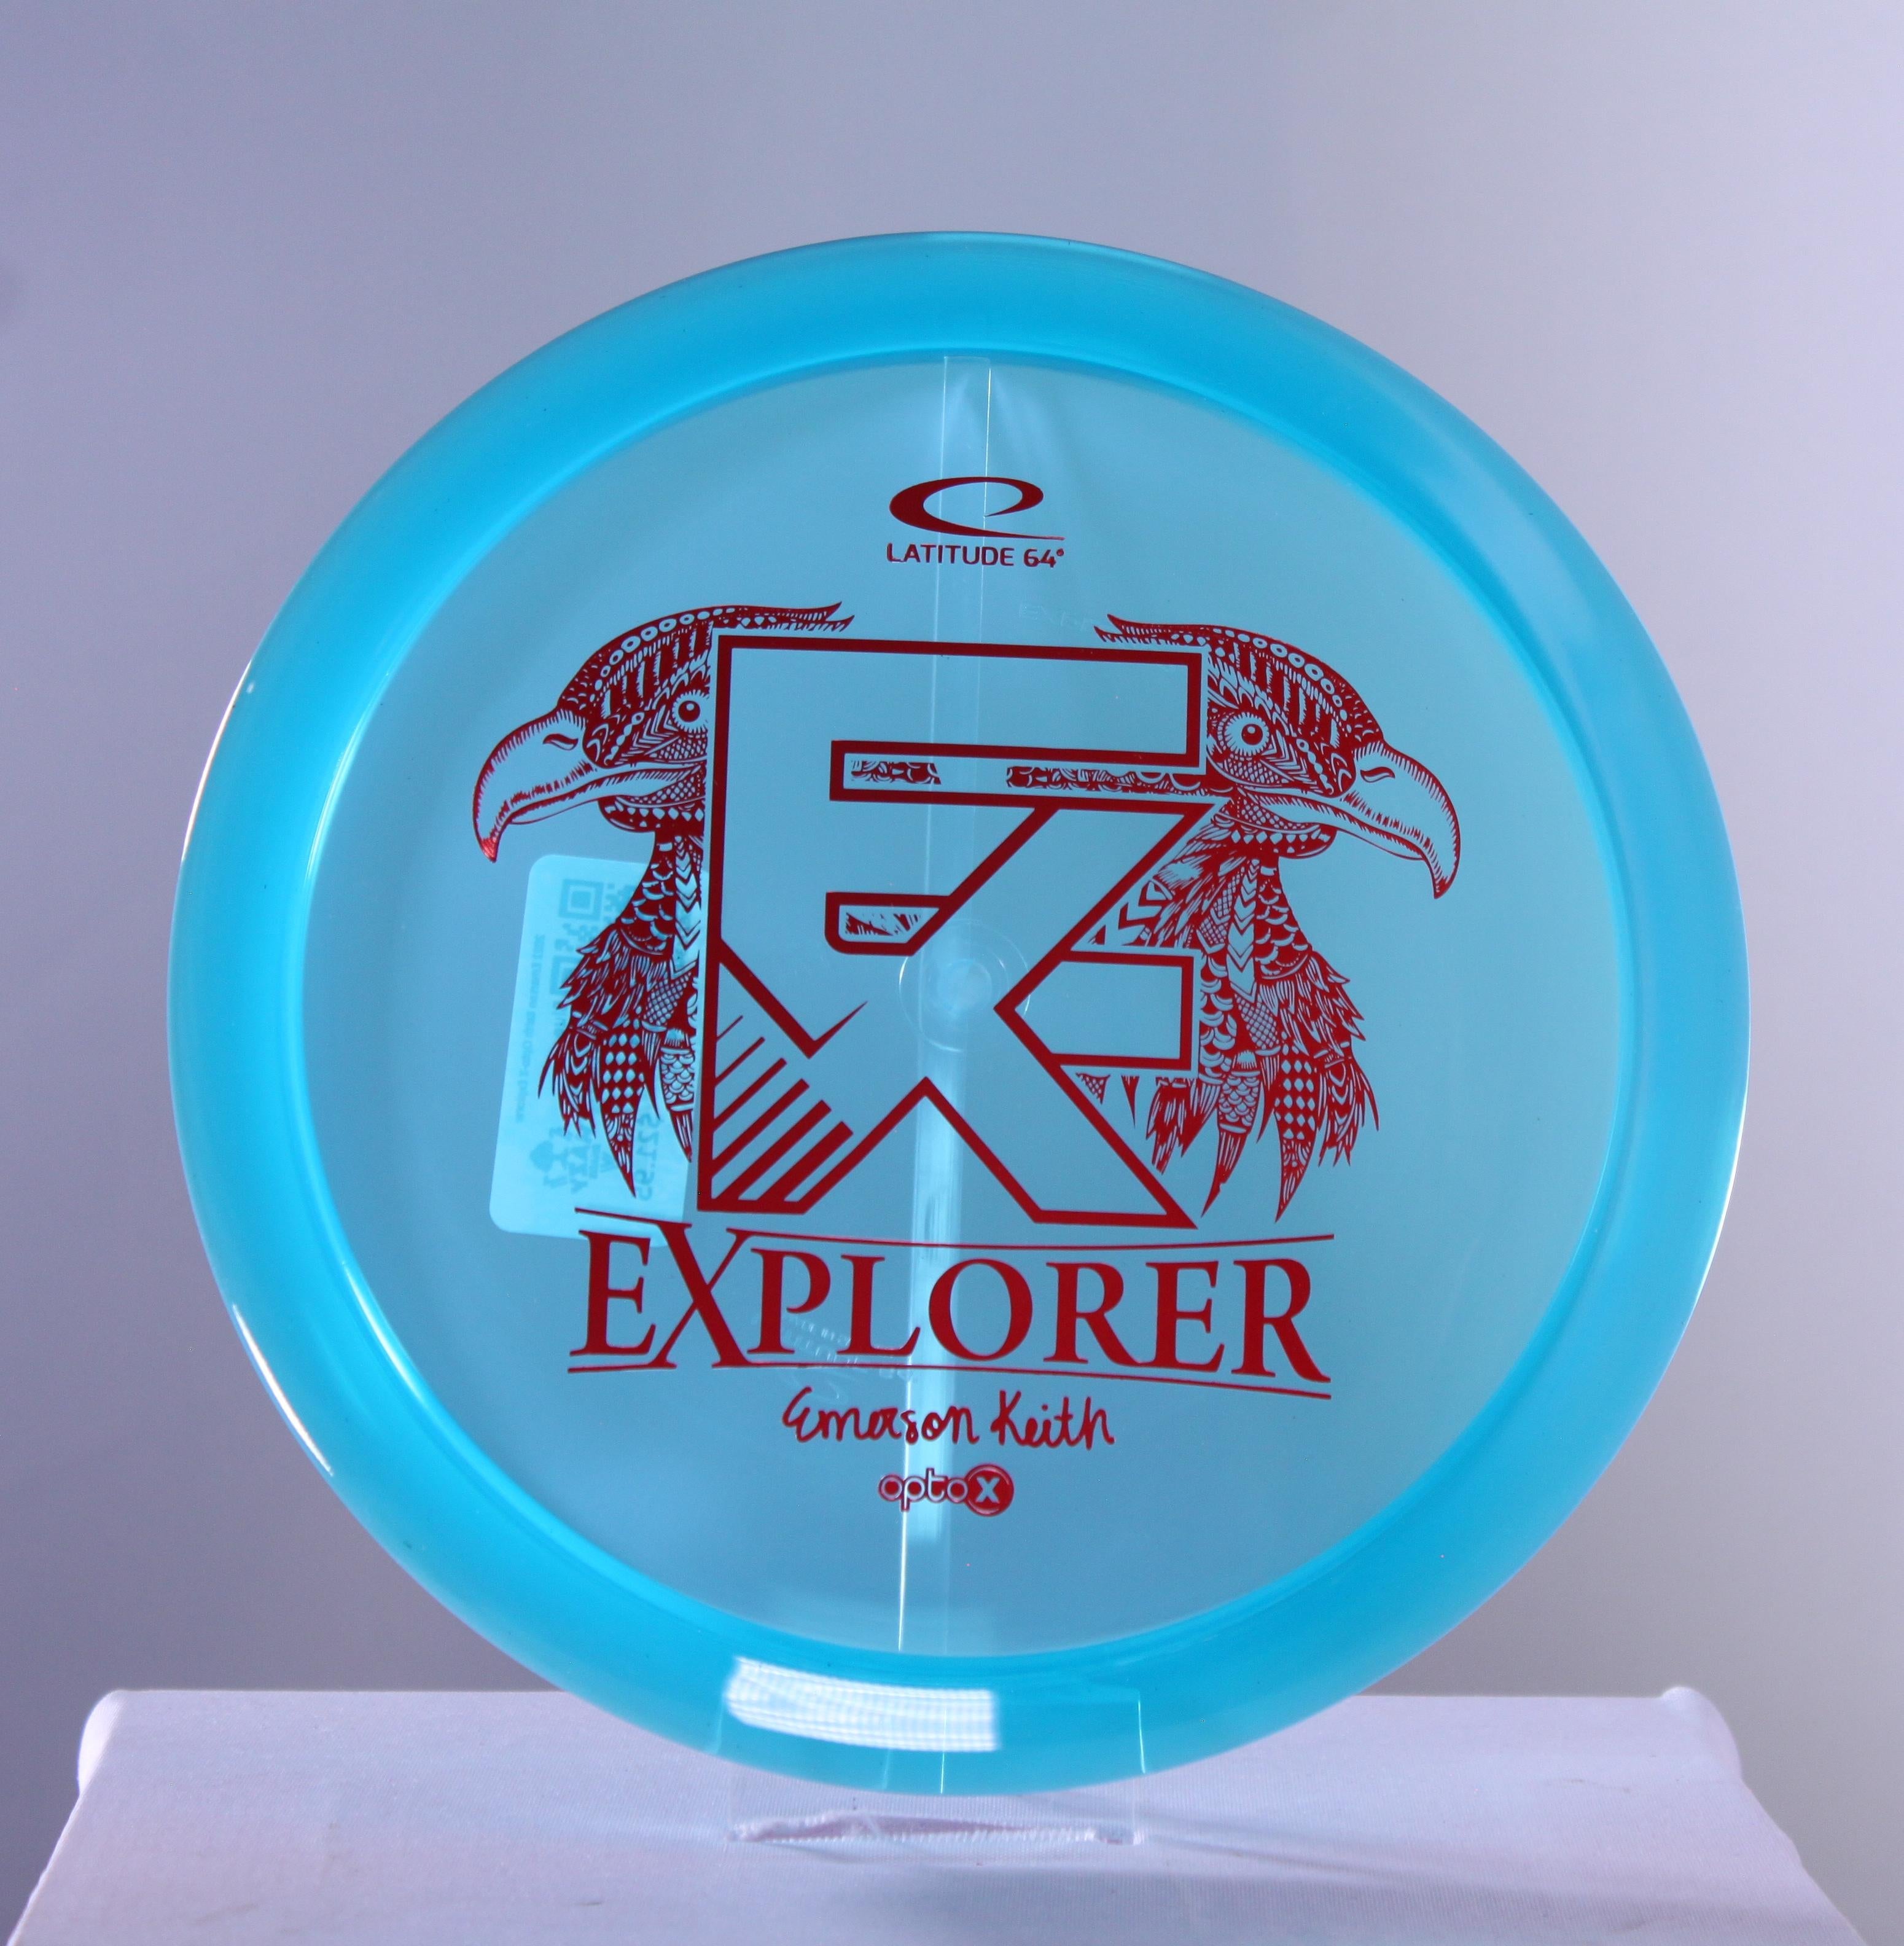 2022 Emerson Keith Opto-X Explorer